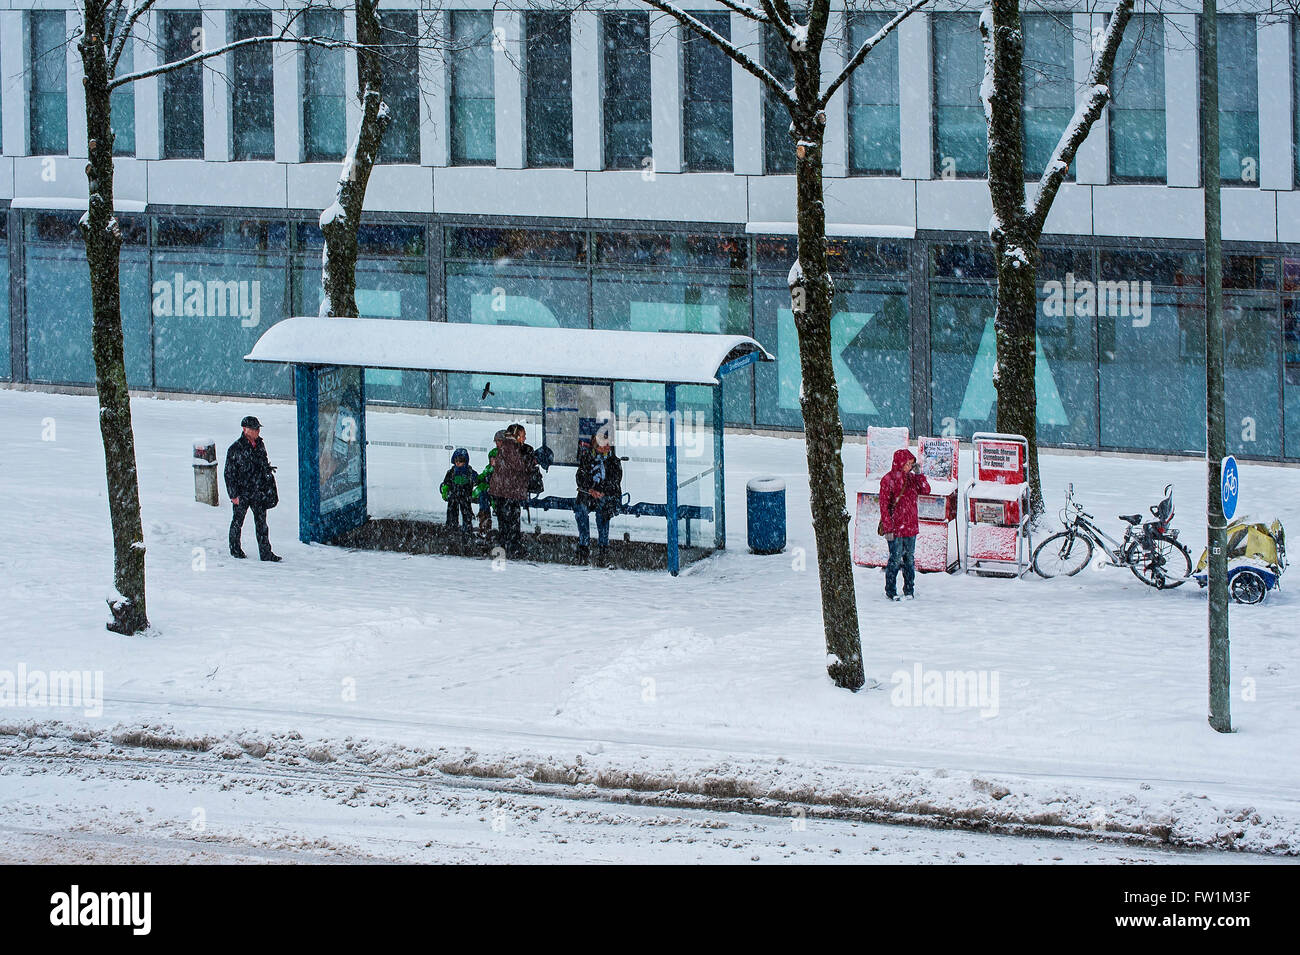 Les gens qui attendent dans un abribus au cours de neige, Munich, Bavière, Allemagne Banque D'Images